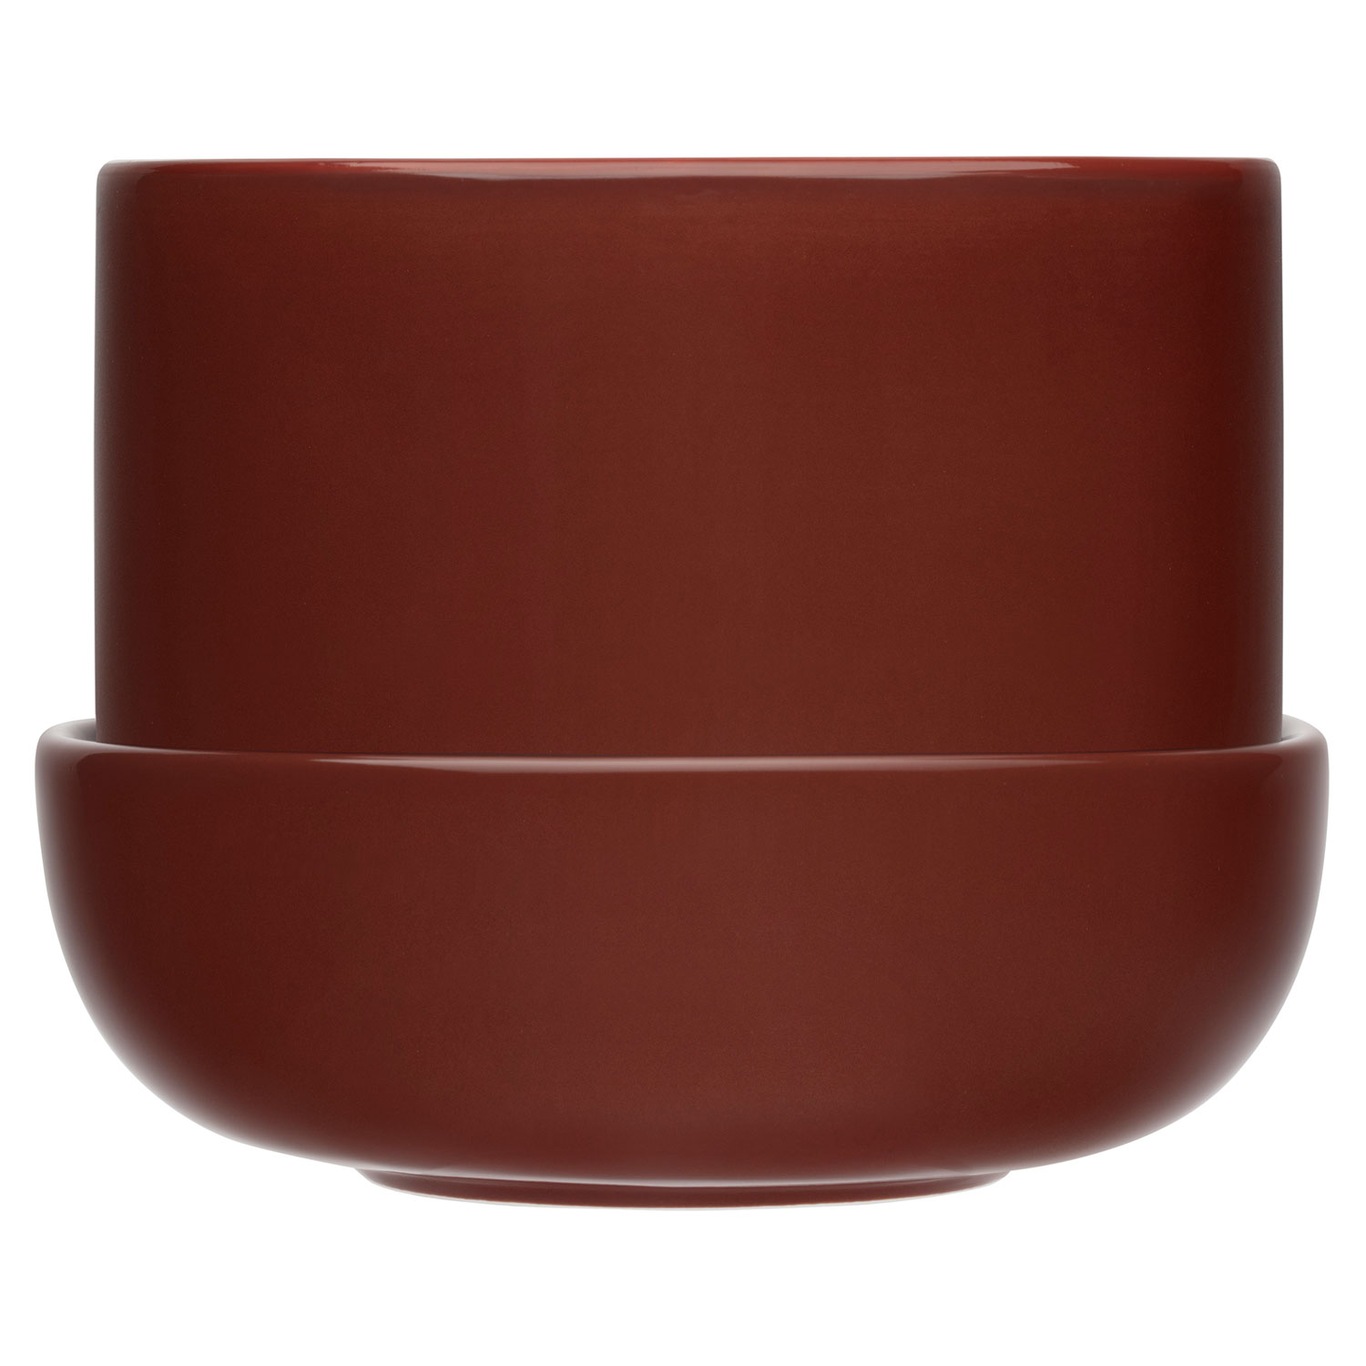 Nappula Pot With Saucer 17x13 cm, Brown